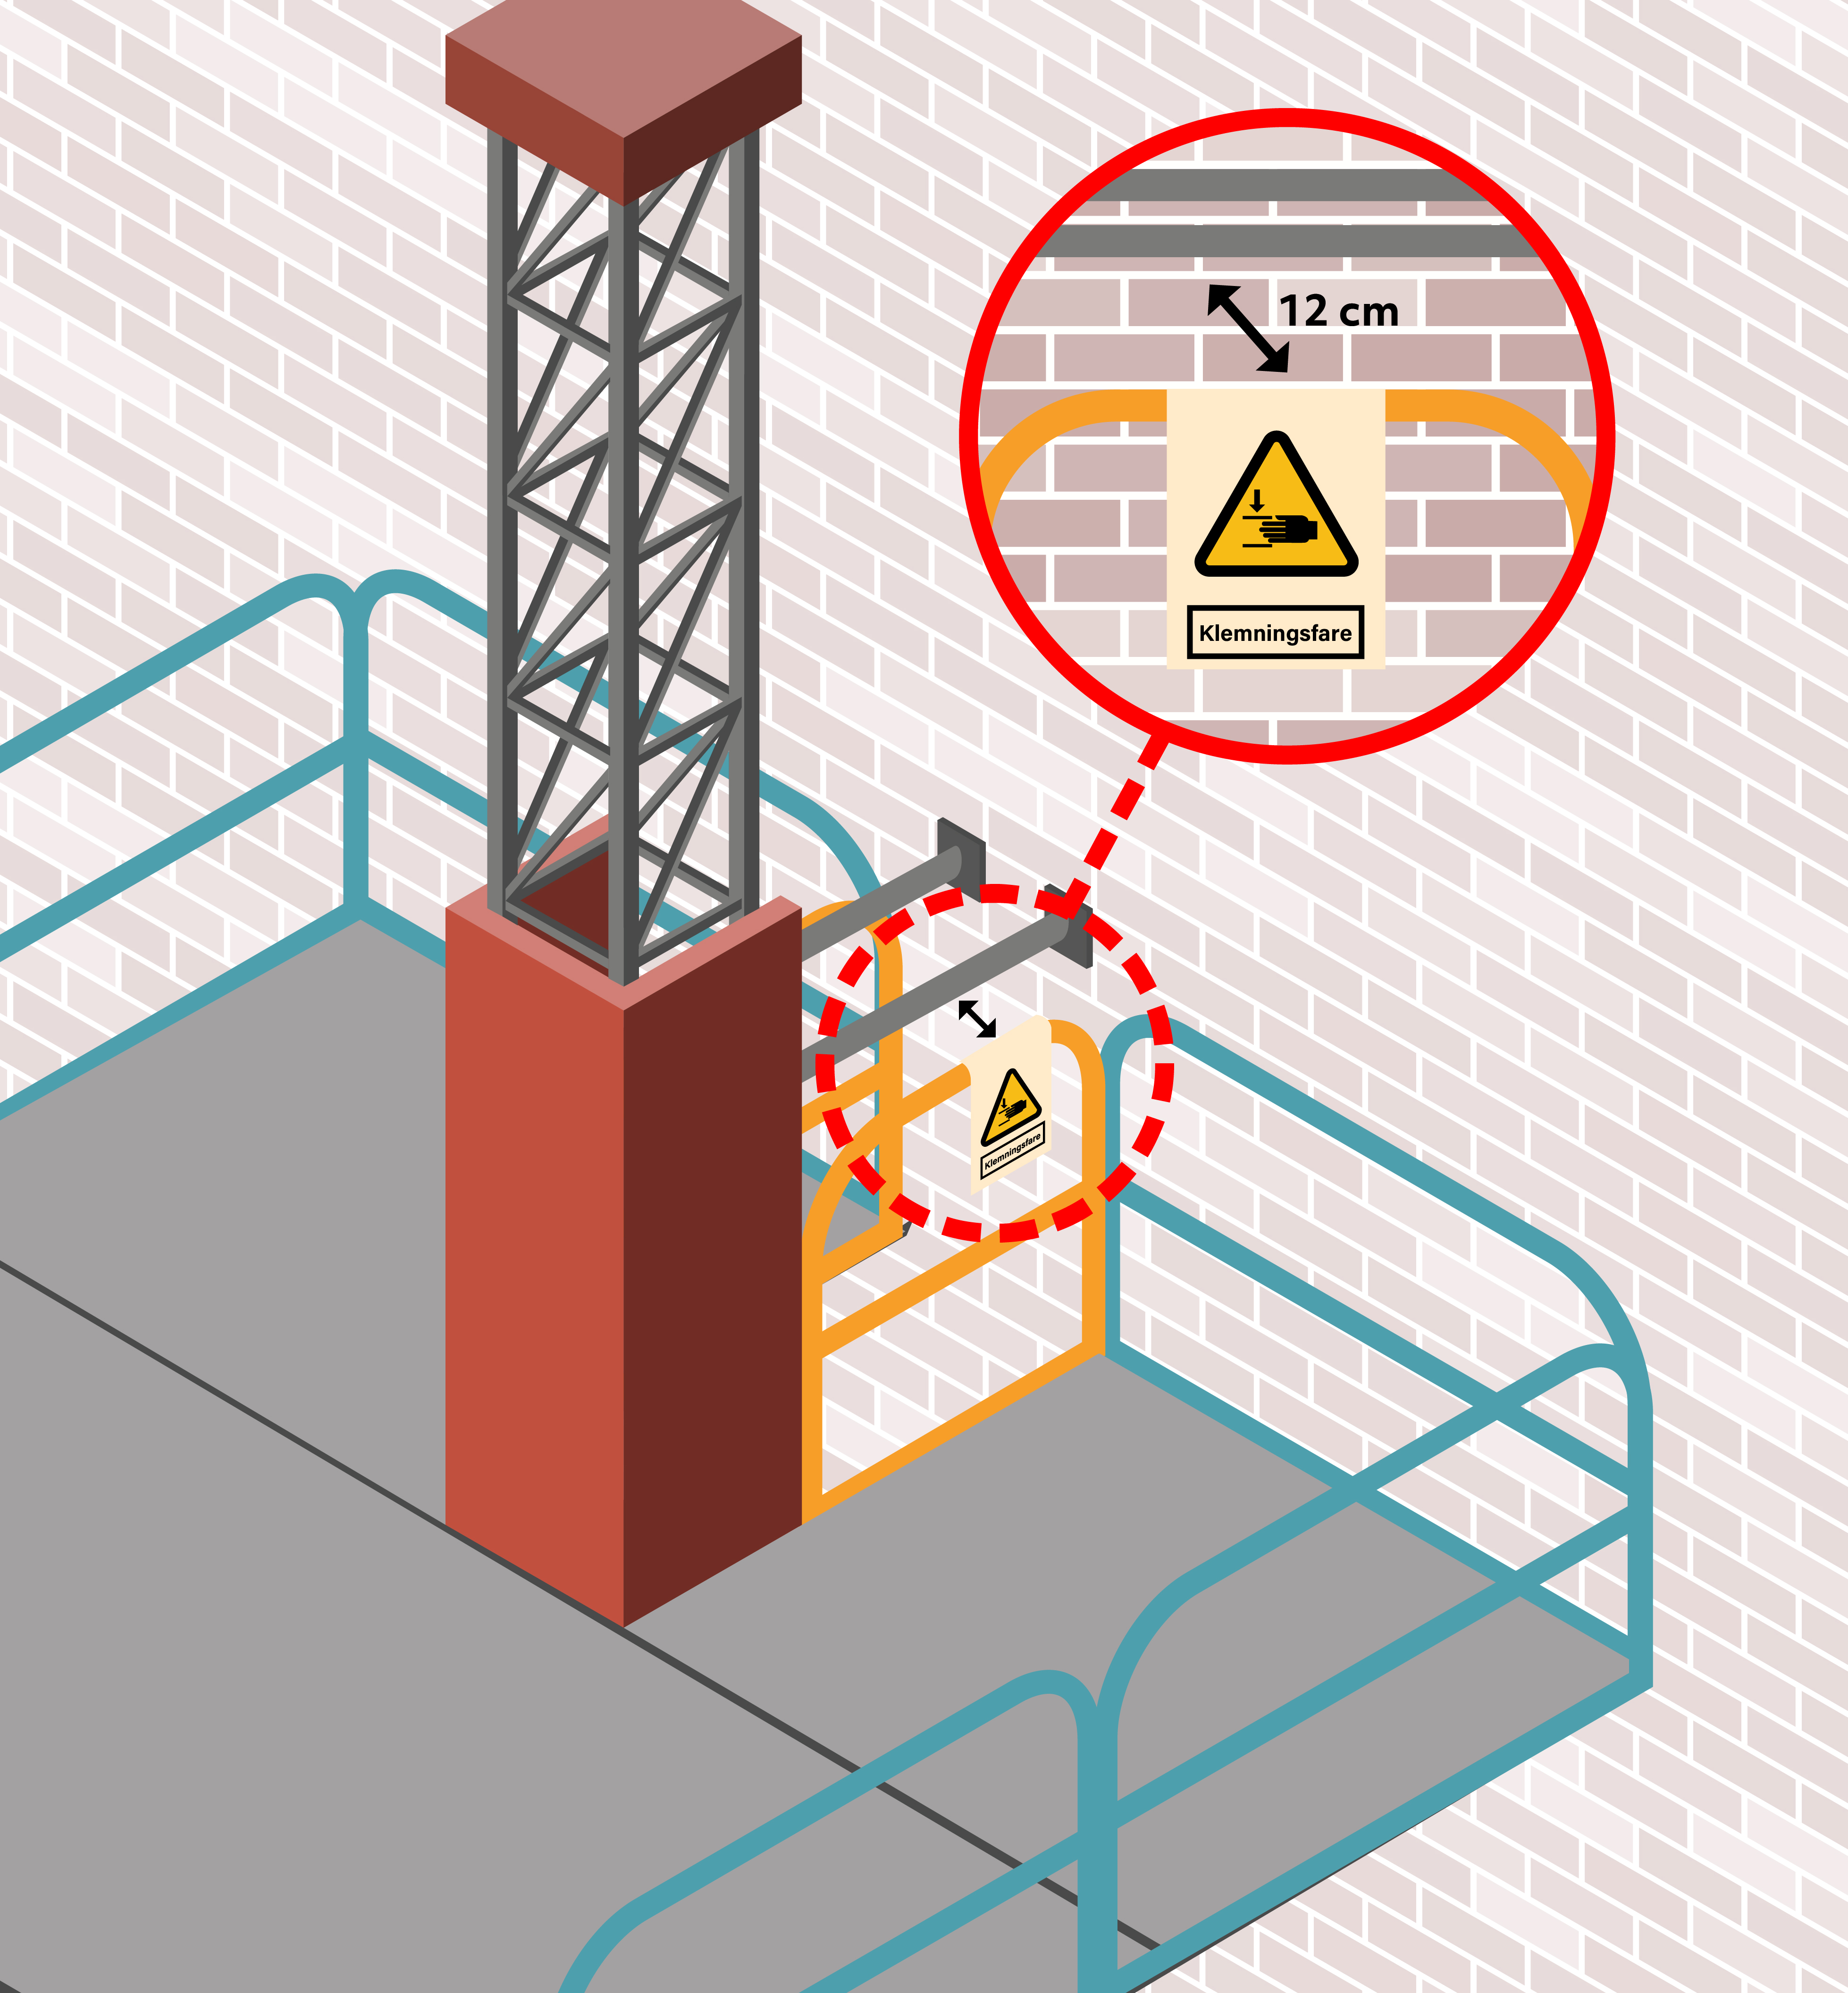 Illustration af arbejdsstandplads der er forsynet med skilte, der advarer mod klemningsfare mellem rækværket og fastgørelserne af masten.